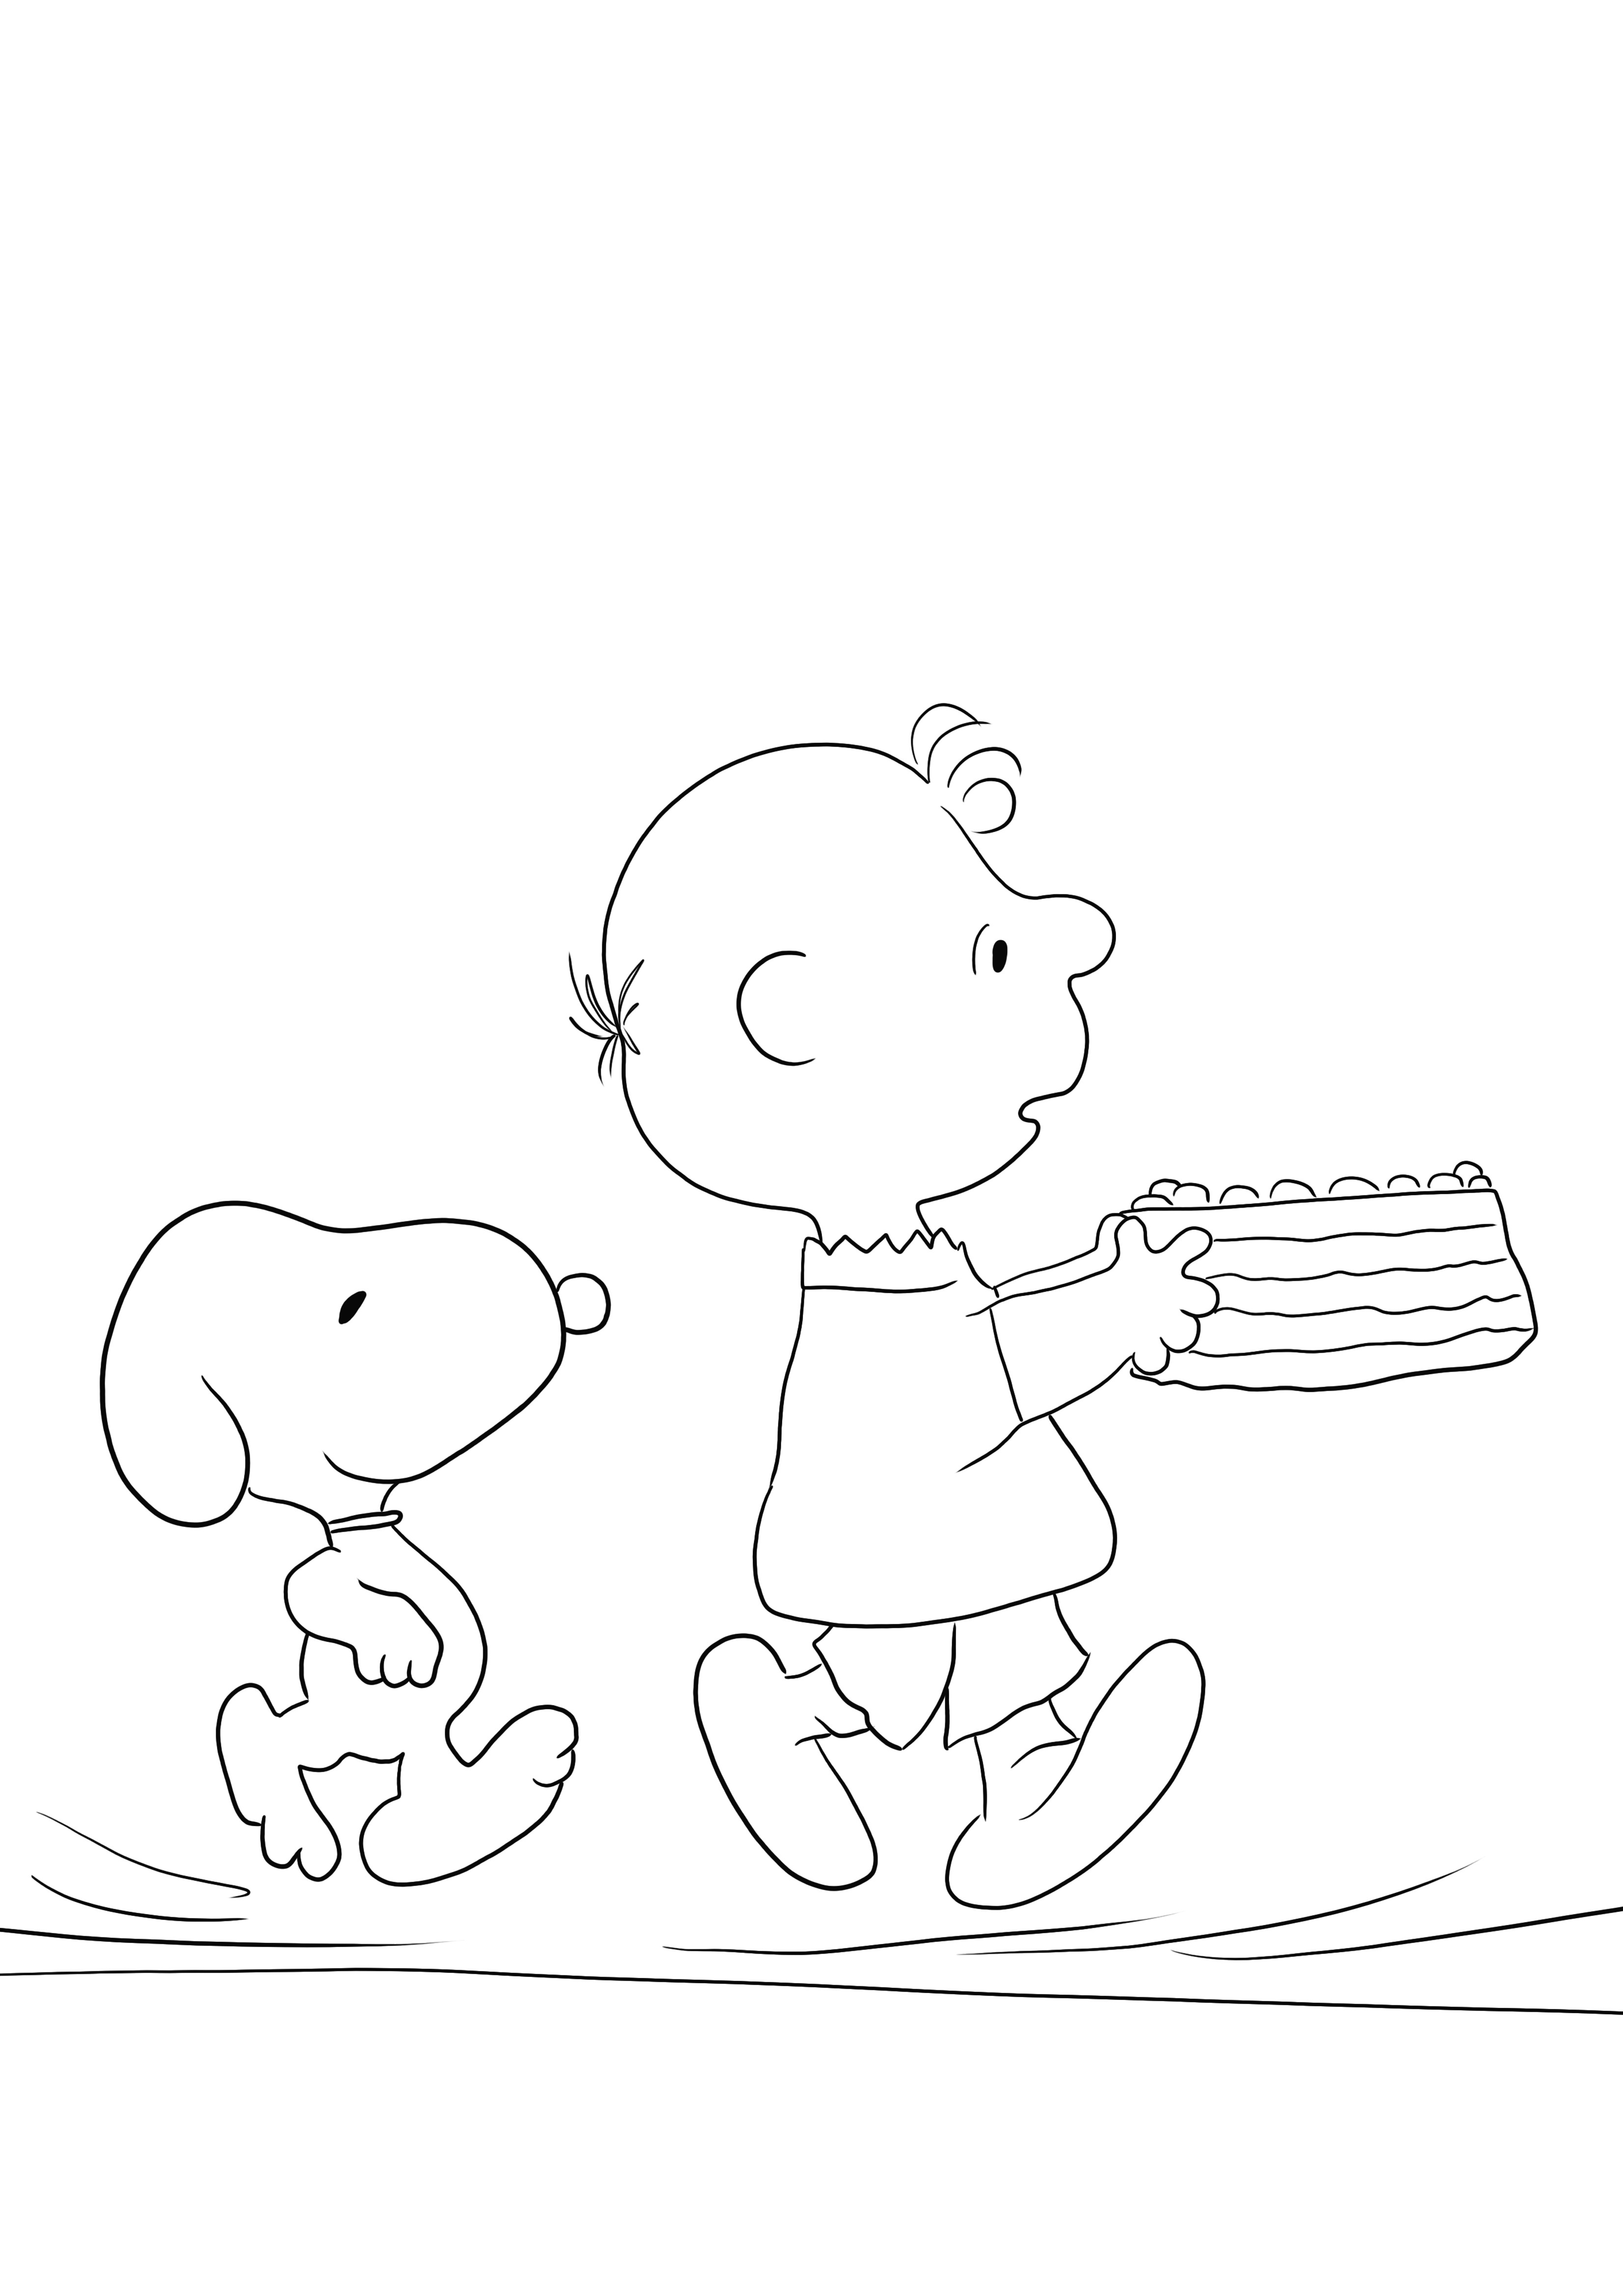 Semplice e gratuito da stampare foglio da colorare di Snoopy Birthday per imparare divertendosi